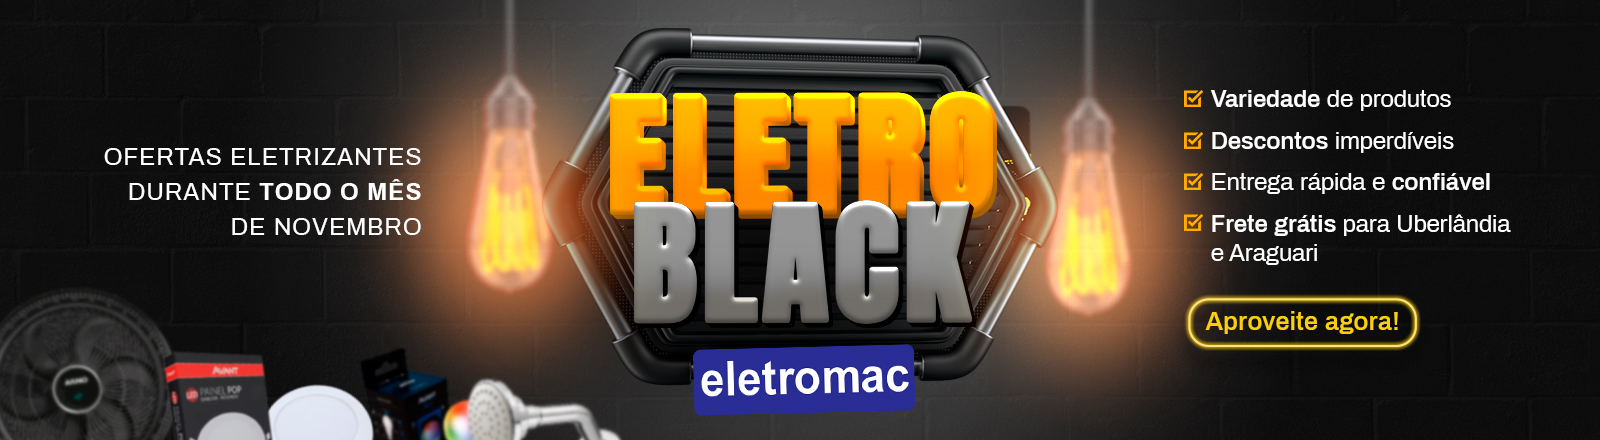 eletroblack